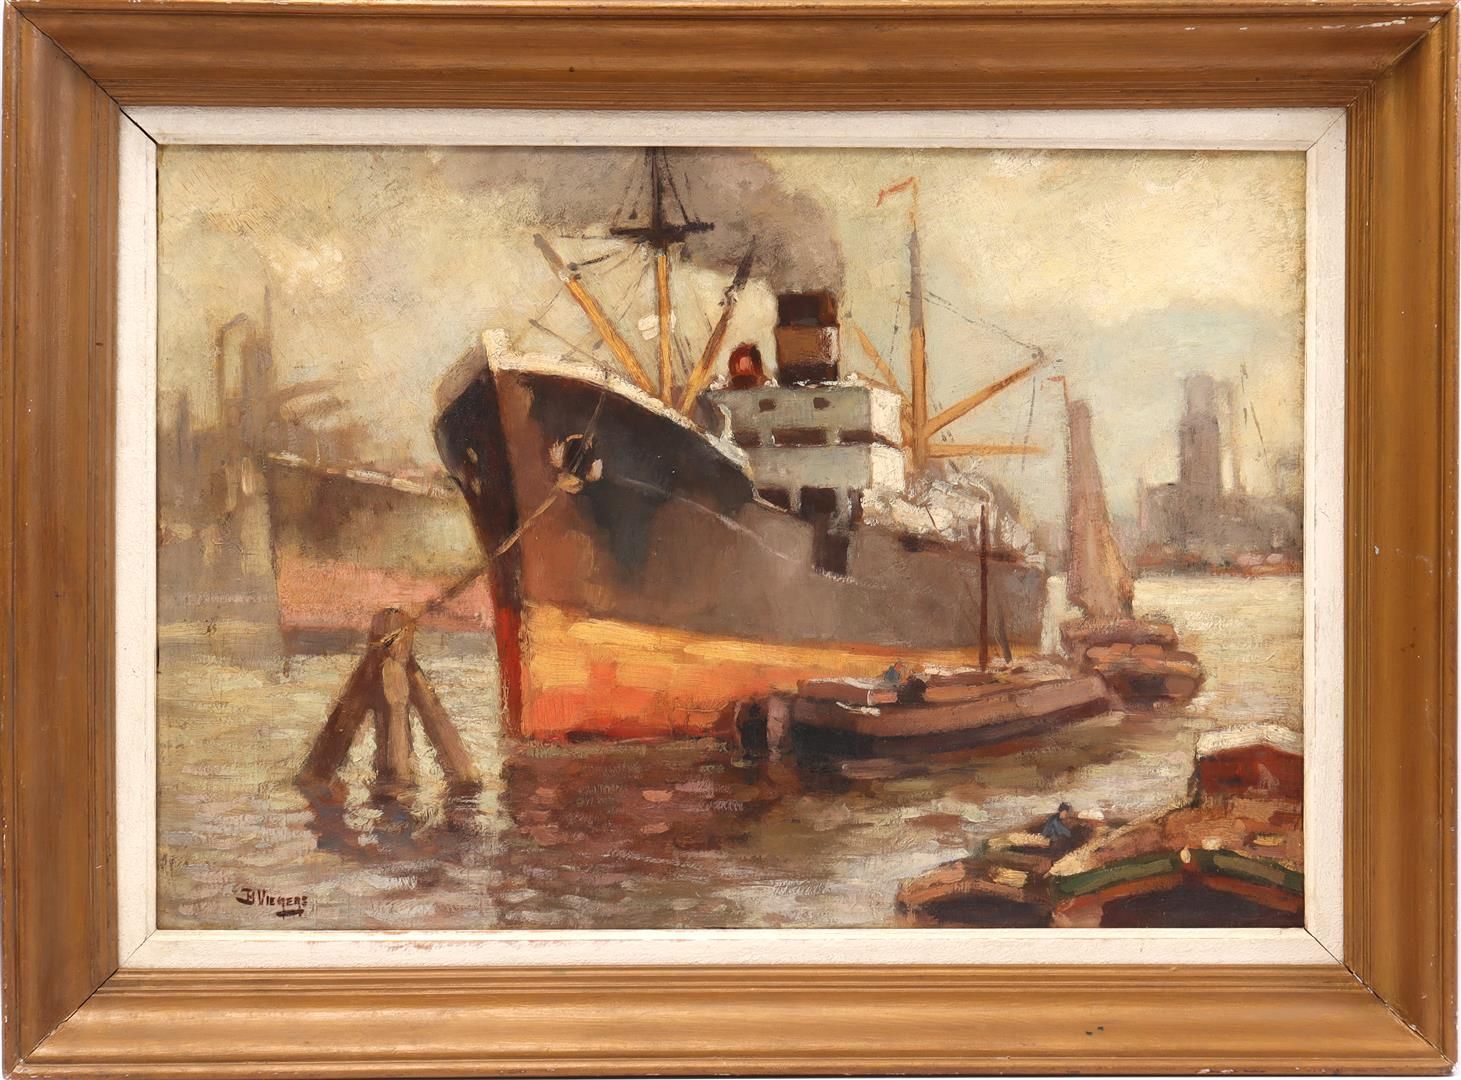 Ben Viegers Ben Viegers (1886-1947)

港湾中的船只，面板51x74厘米